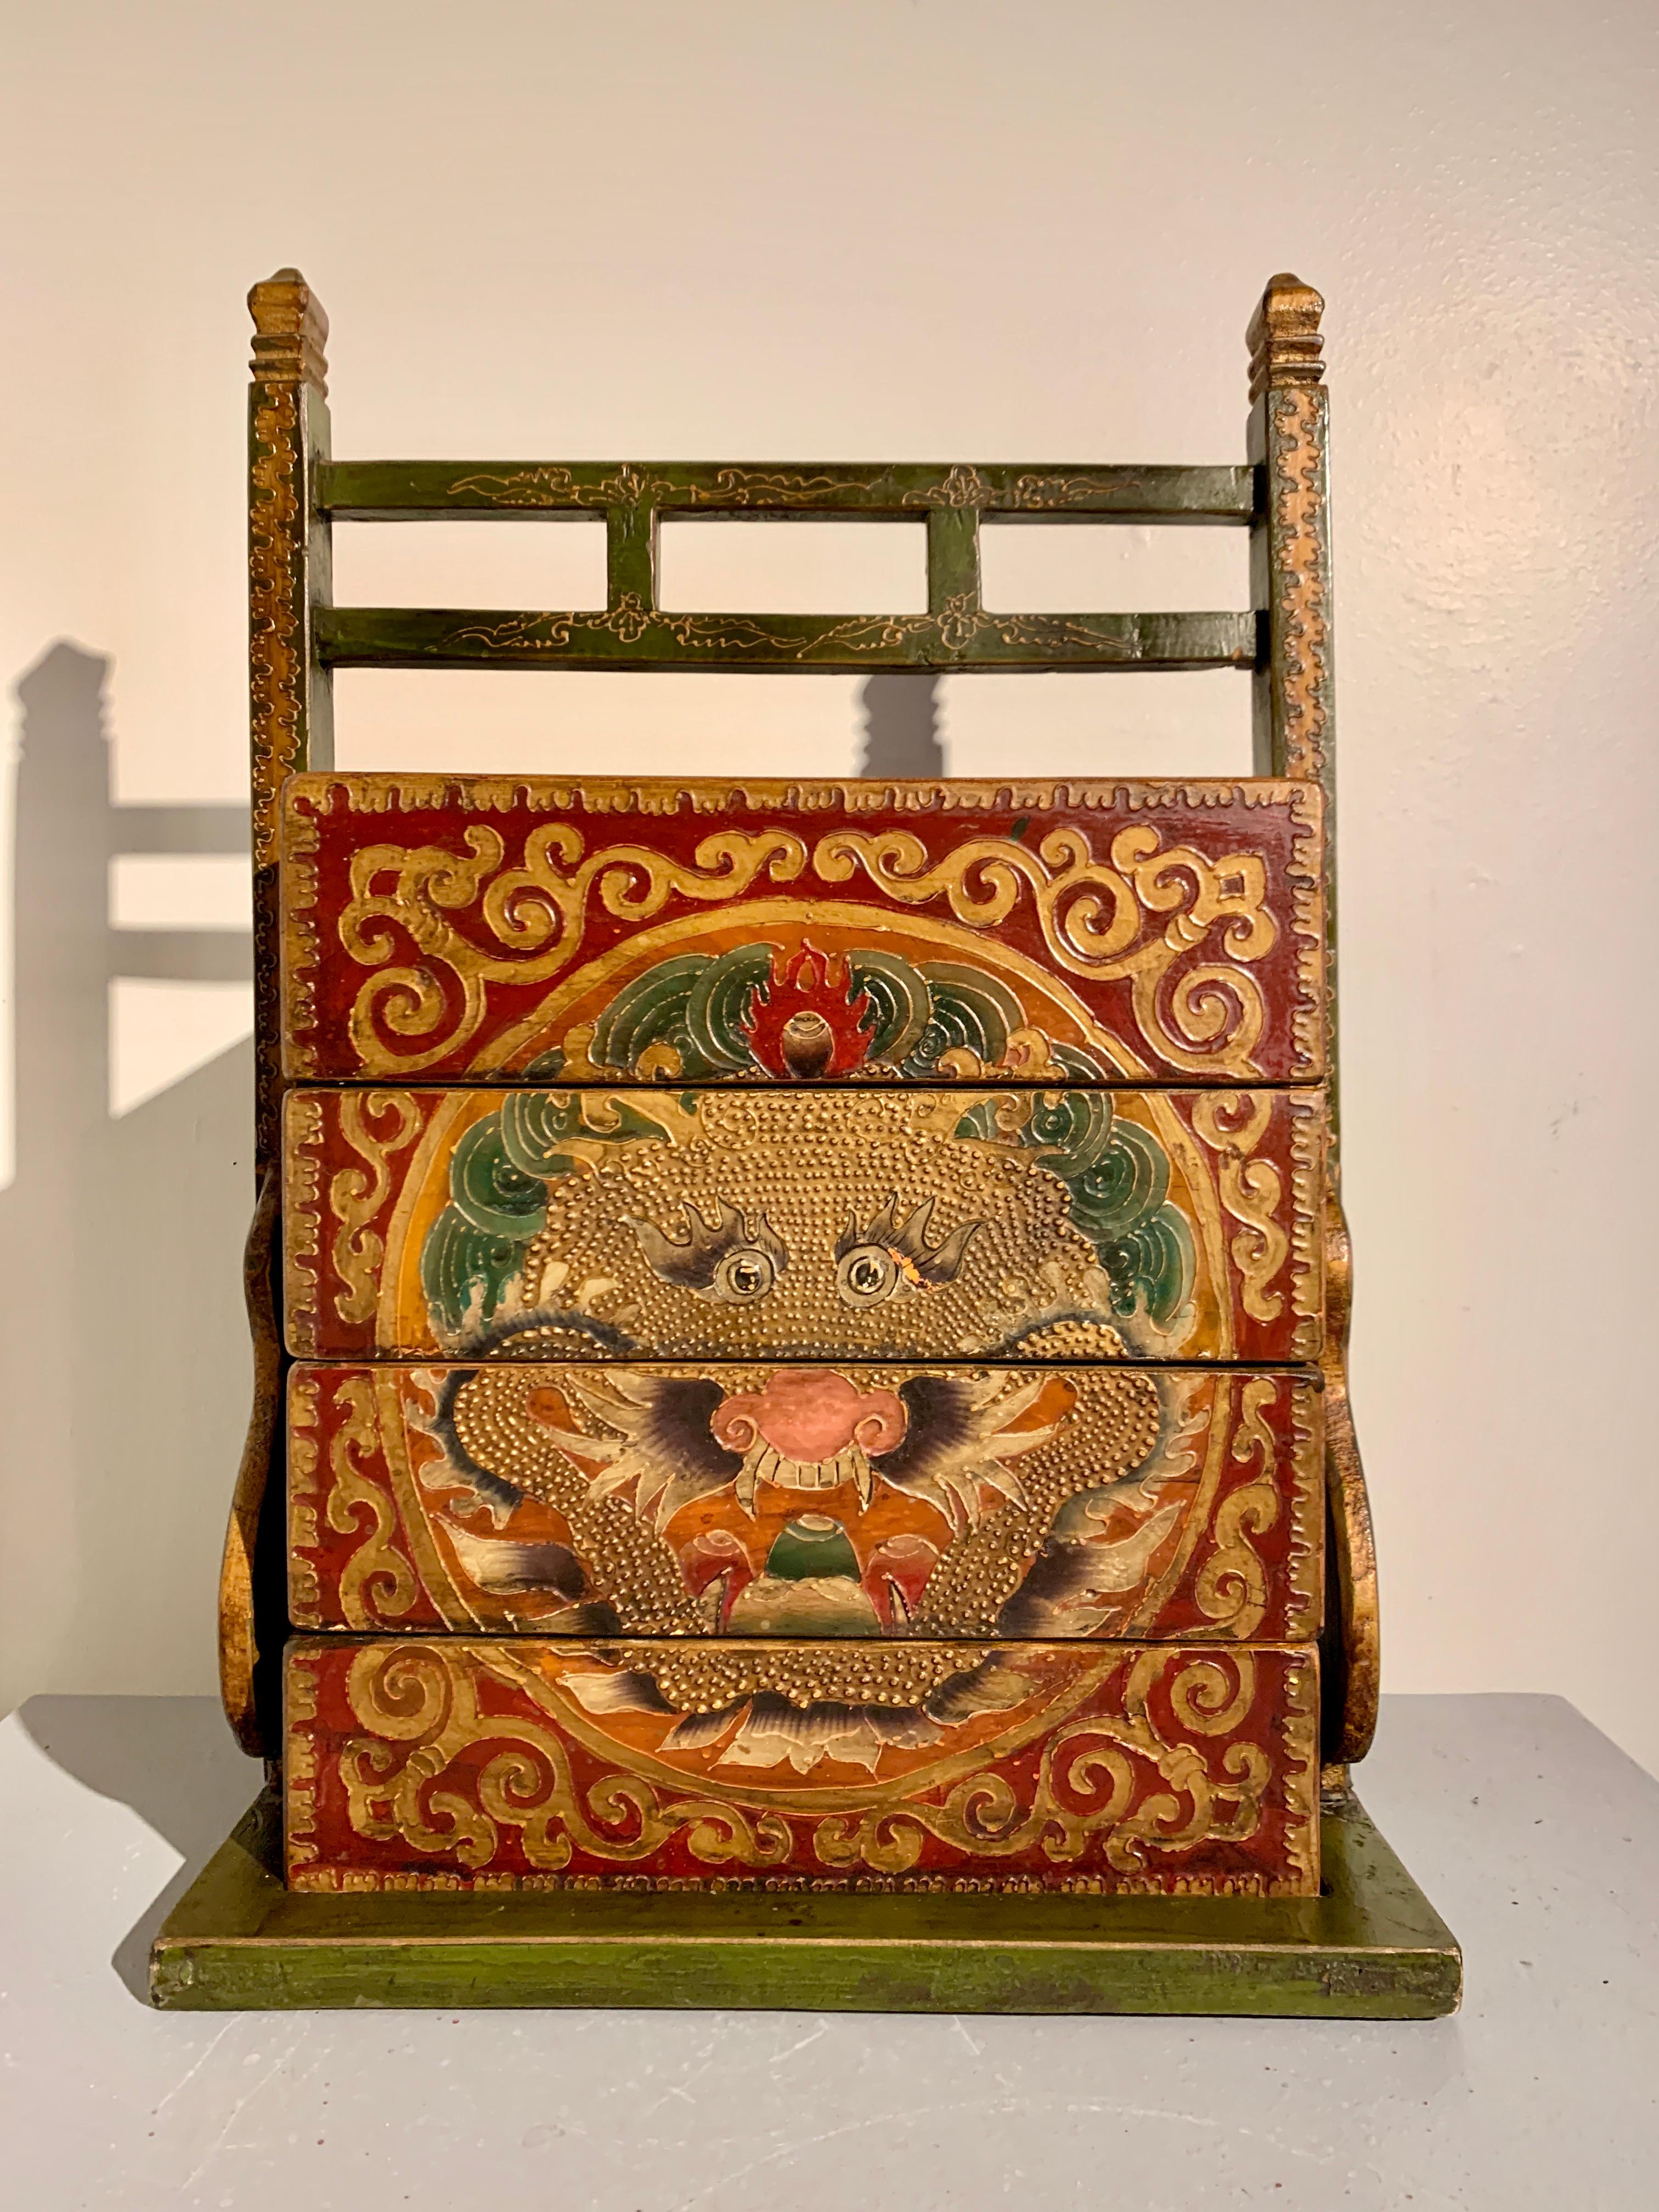 Boîte à pique-nique superposable et porte-bagages vintage chinoise peinte en rouge, peinte dans le style tibétain, vers les années 1990, Chine.

La grande boîte à pique-nique en bois peint et texturé et son support se composent de trois plateaux